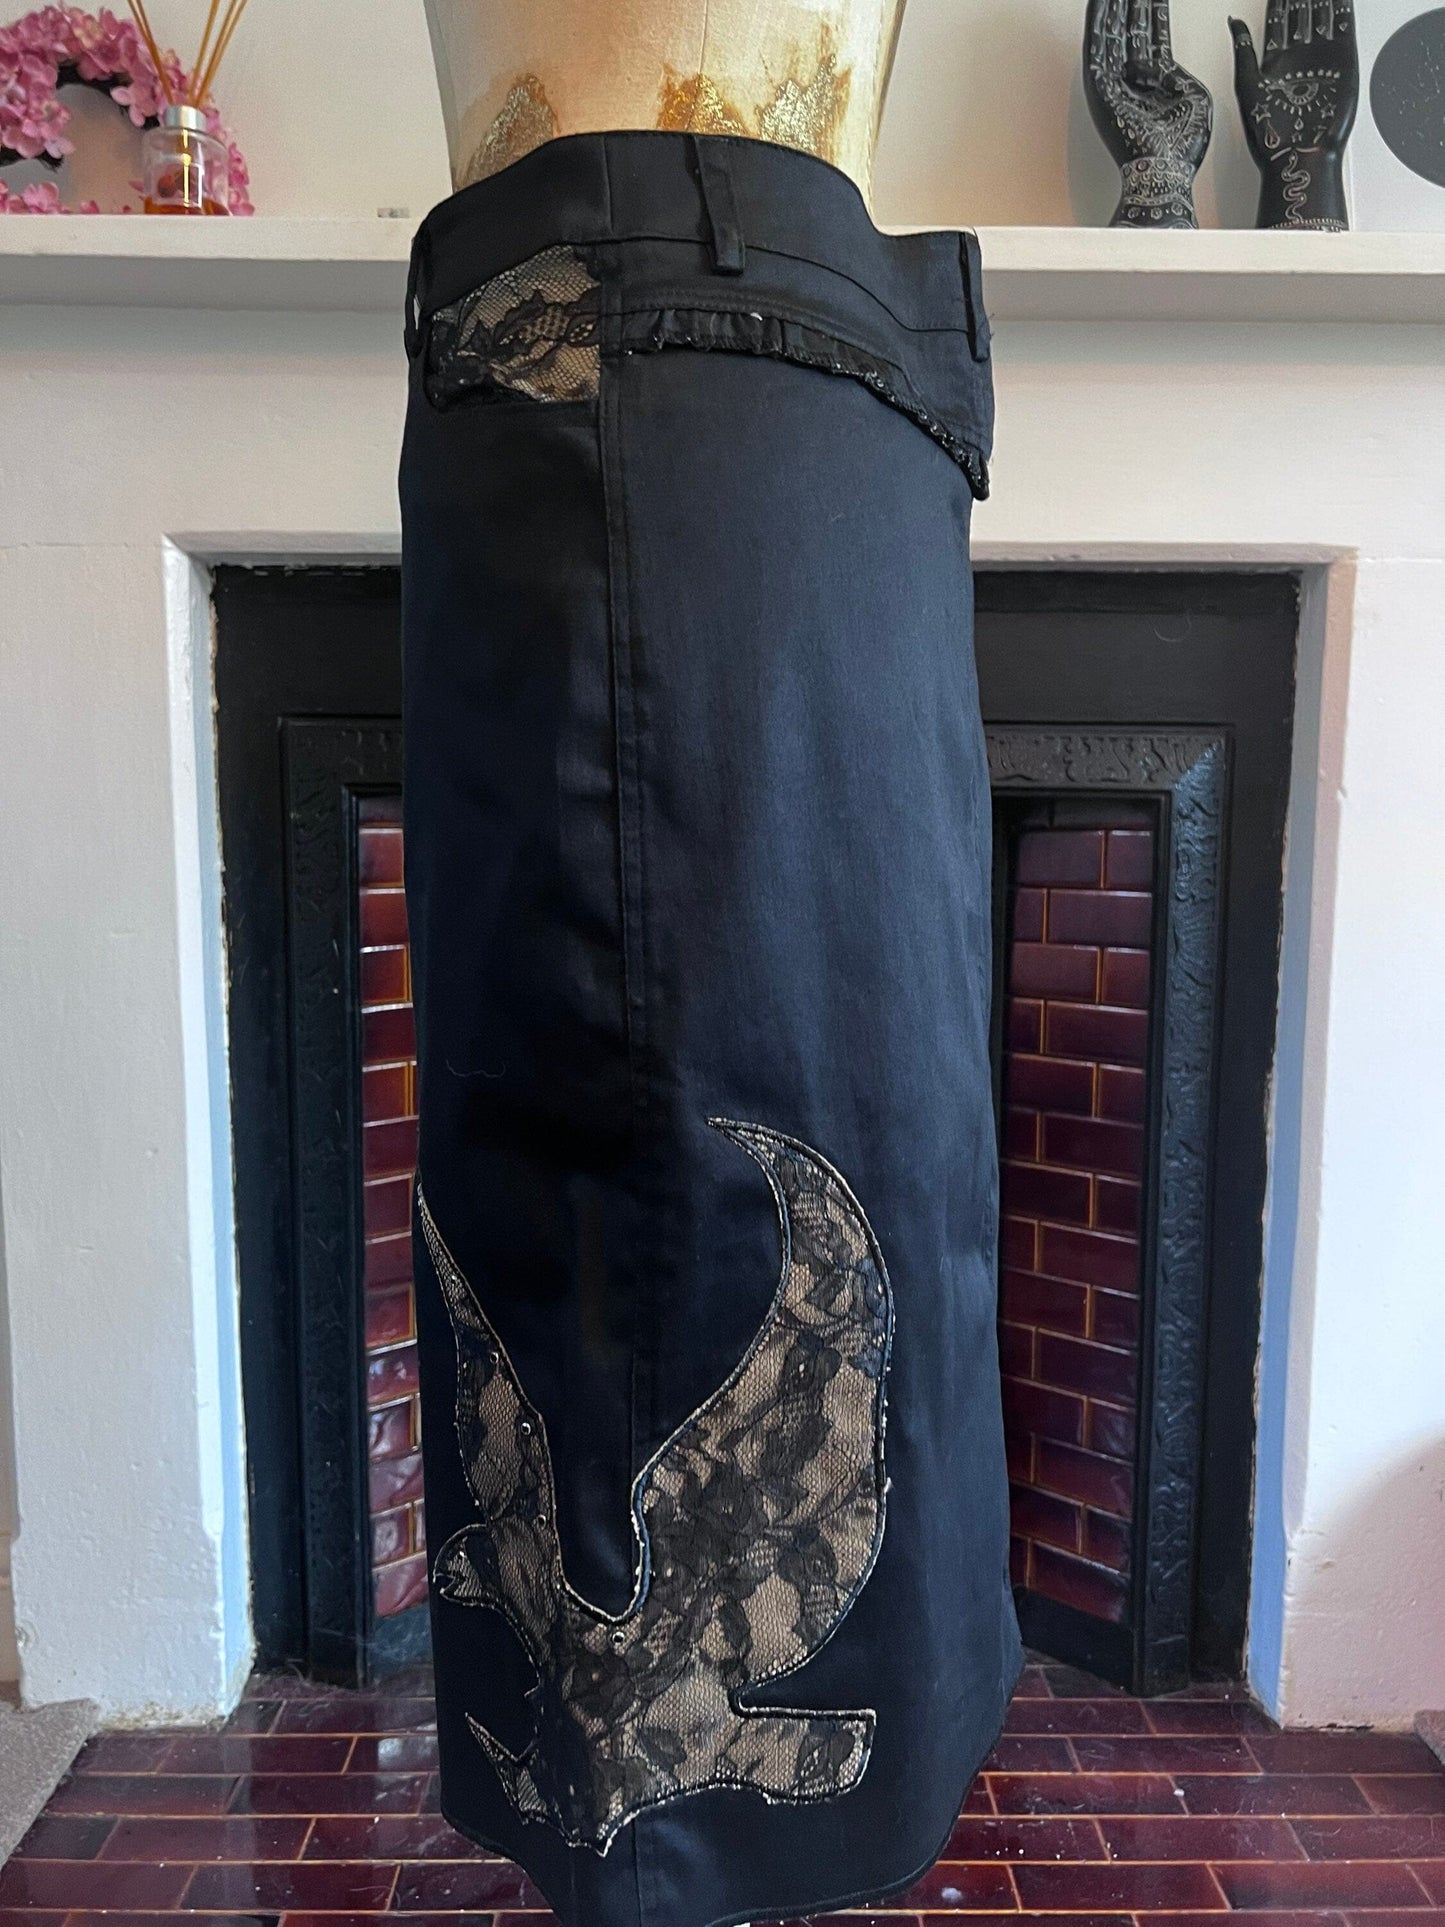 Vintage Black Western Style Skirt - Lace Details - A-Line Black Skirt 90s Black Stretch Skirt - Sharagano UK12